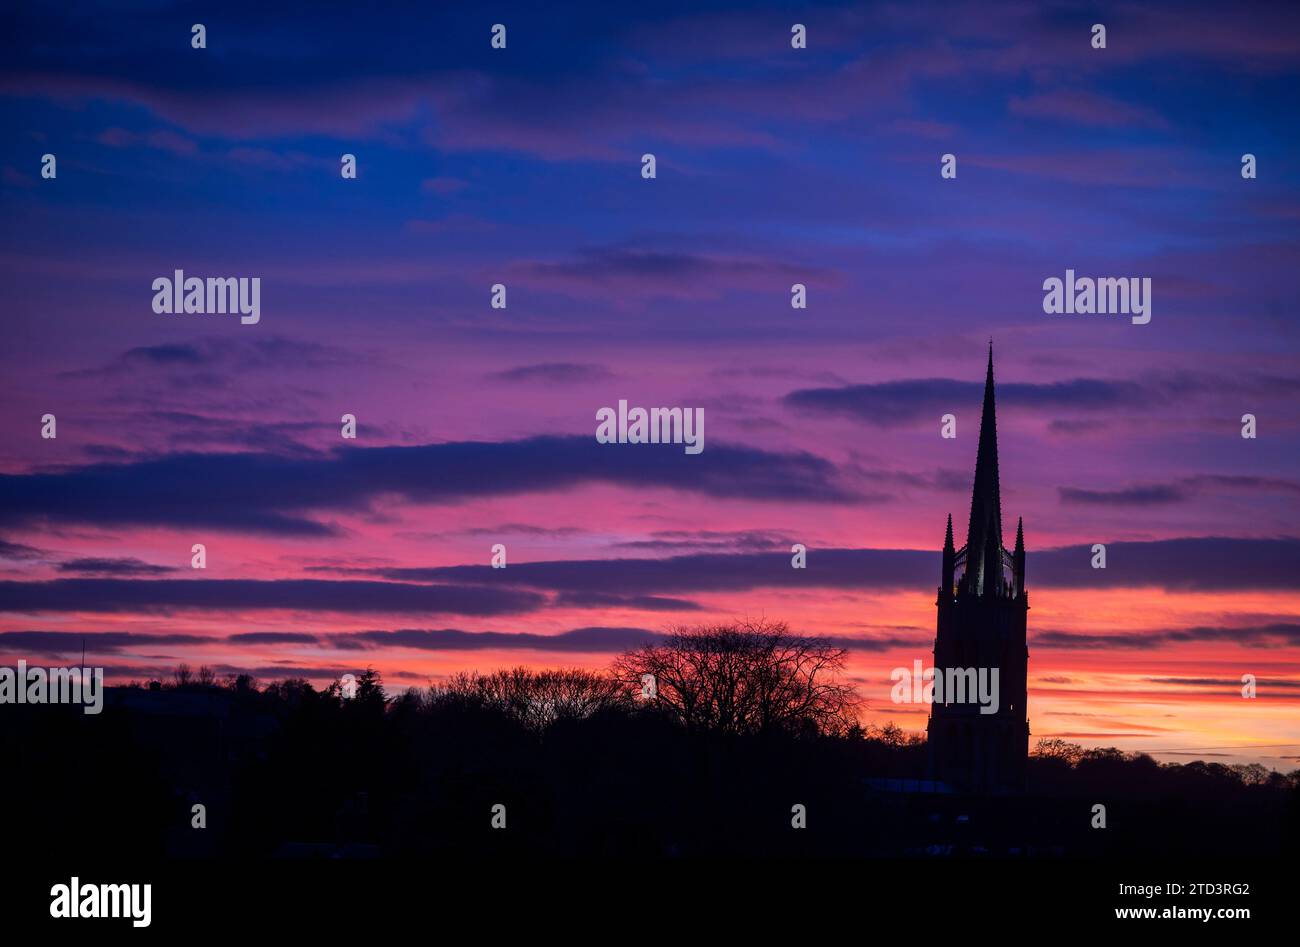 Dezember 2023 Louth, Lincolnshire, England. Ein dramatischer farbenfroher Sonnenuntergang hinter dem Turm der St. Jame’s Church in Louth, Lincolnshire. Hoch über der Landschaft der hübschen Marktstadt am Rande der Lincolnshire Wolds. Stellen Sie Sich Phil Wilkinson Vor Stockfoto